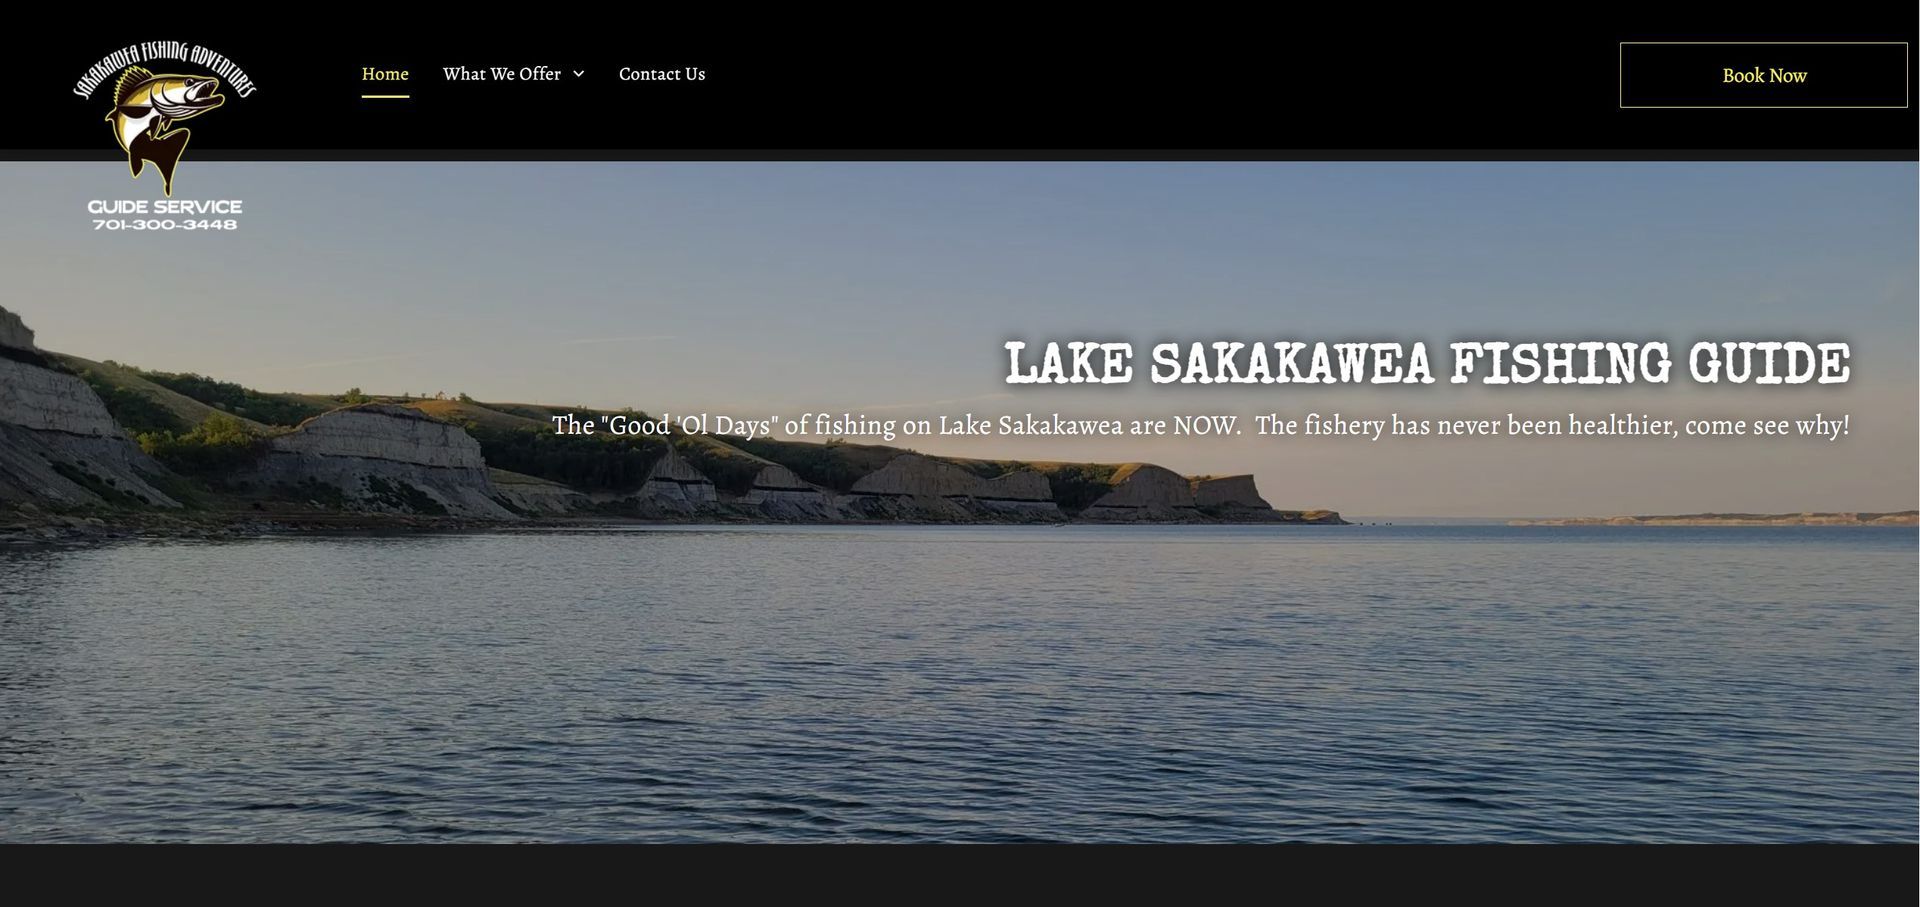 Lake Sakakwea Fishing Guide